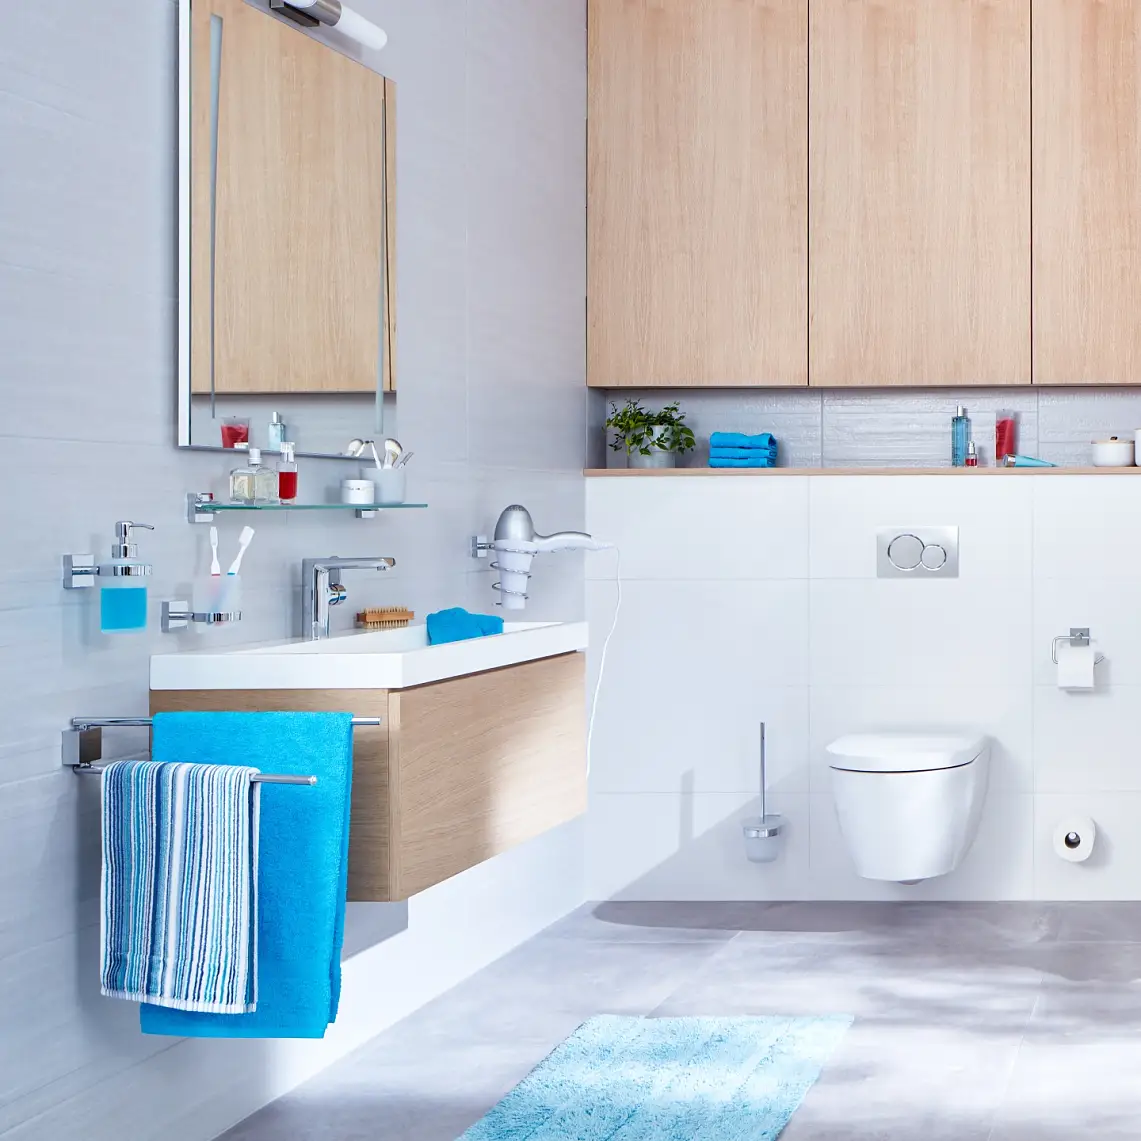 Tydlig design och raka linjer för en badrumsupplevelse som präglas av ordning och reda.